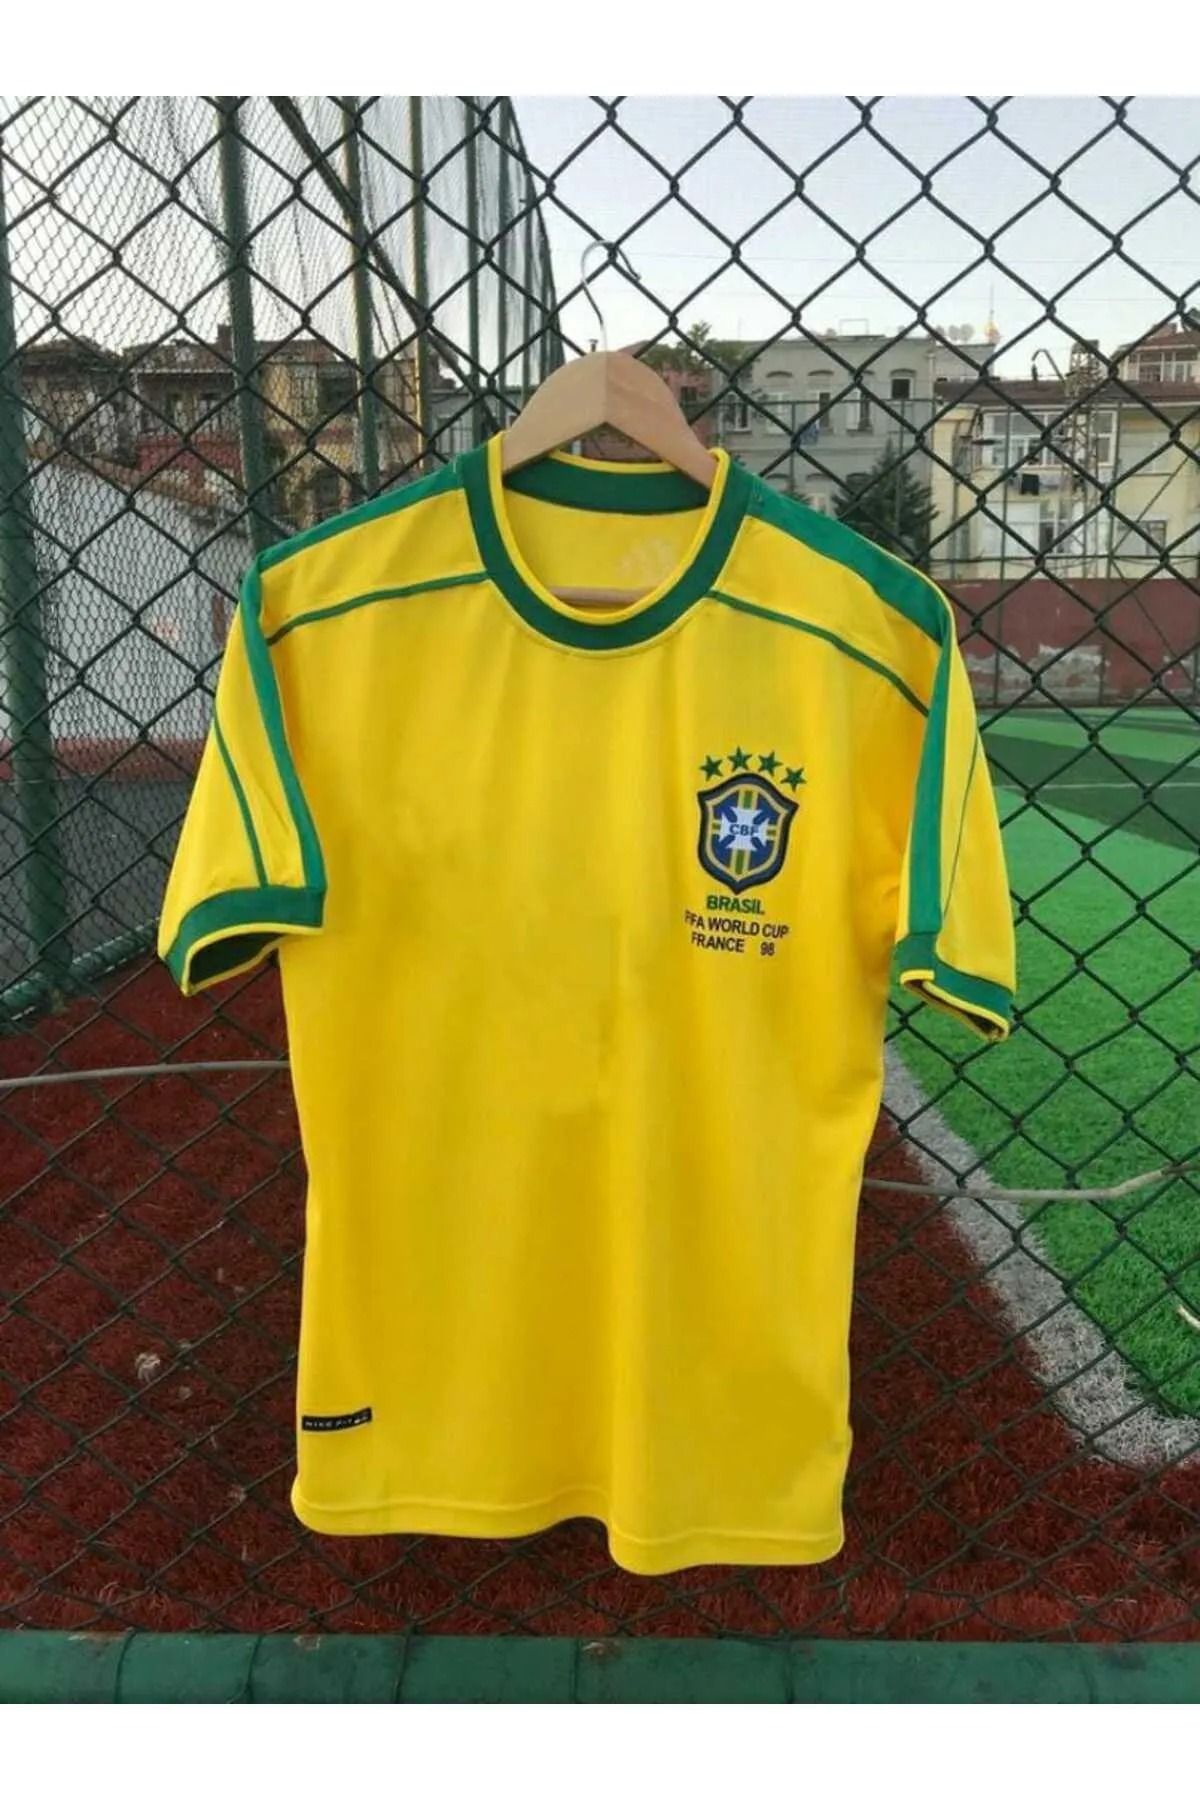 AJAX STAR Brezilya Milli Takımı 98 Dünya Kupası Ronaldinho Nostalji Forması